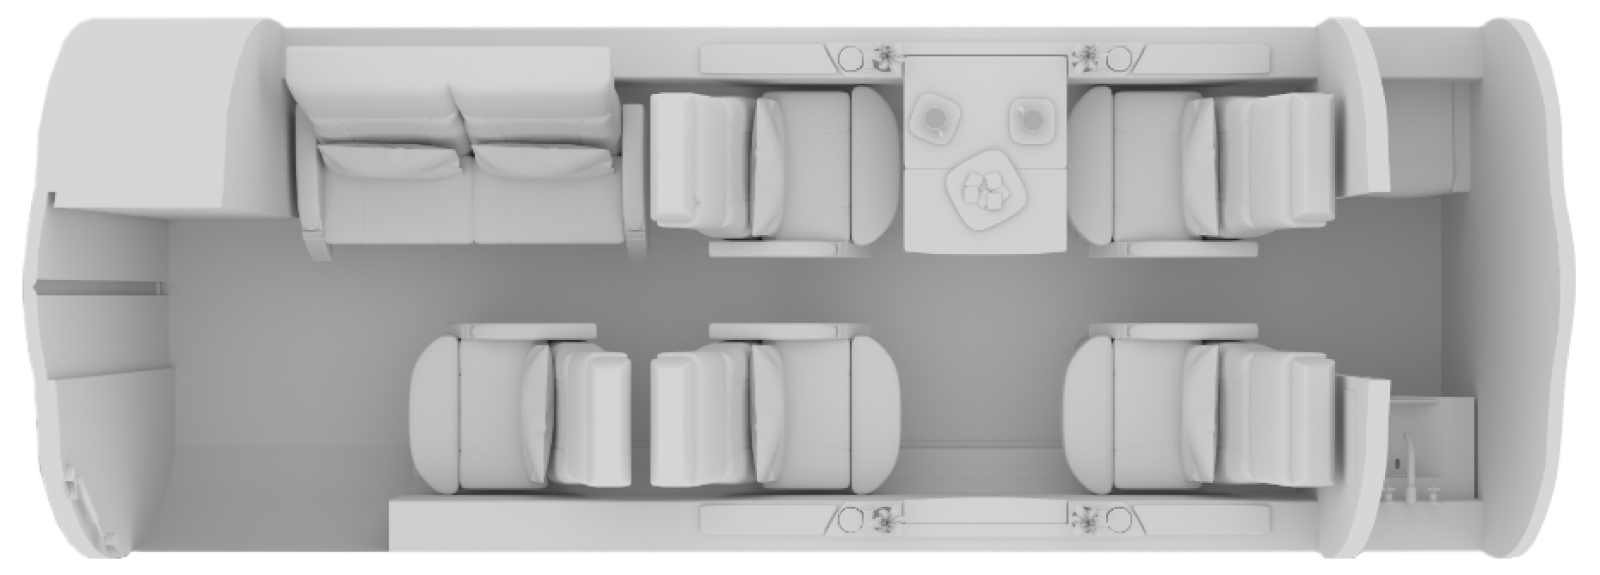 Learjet 60 Floor Plan